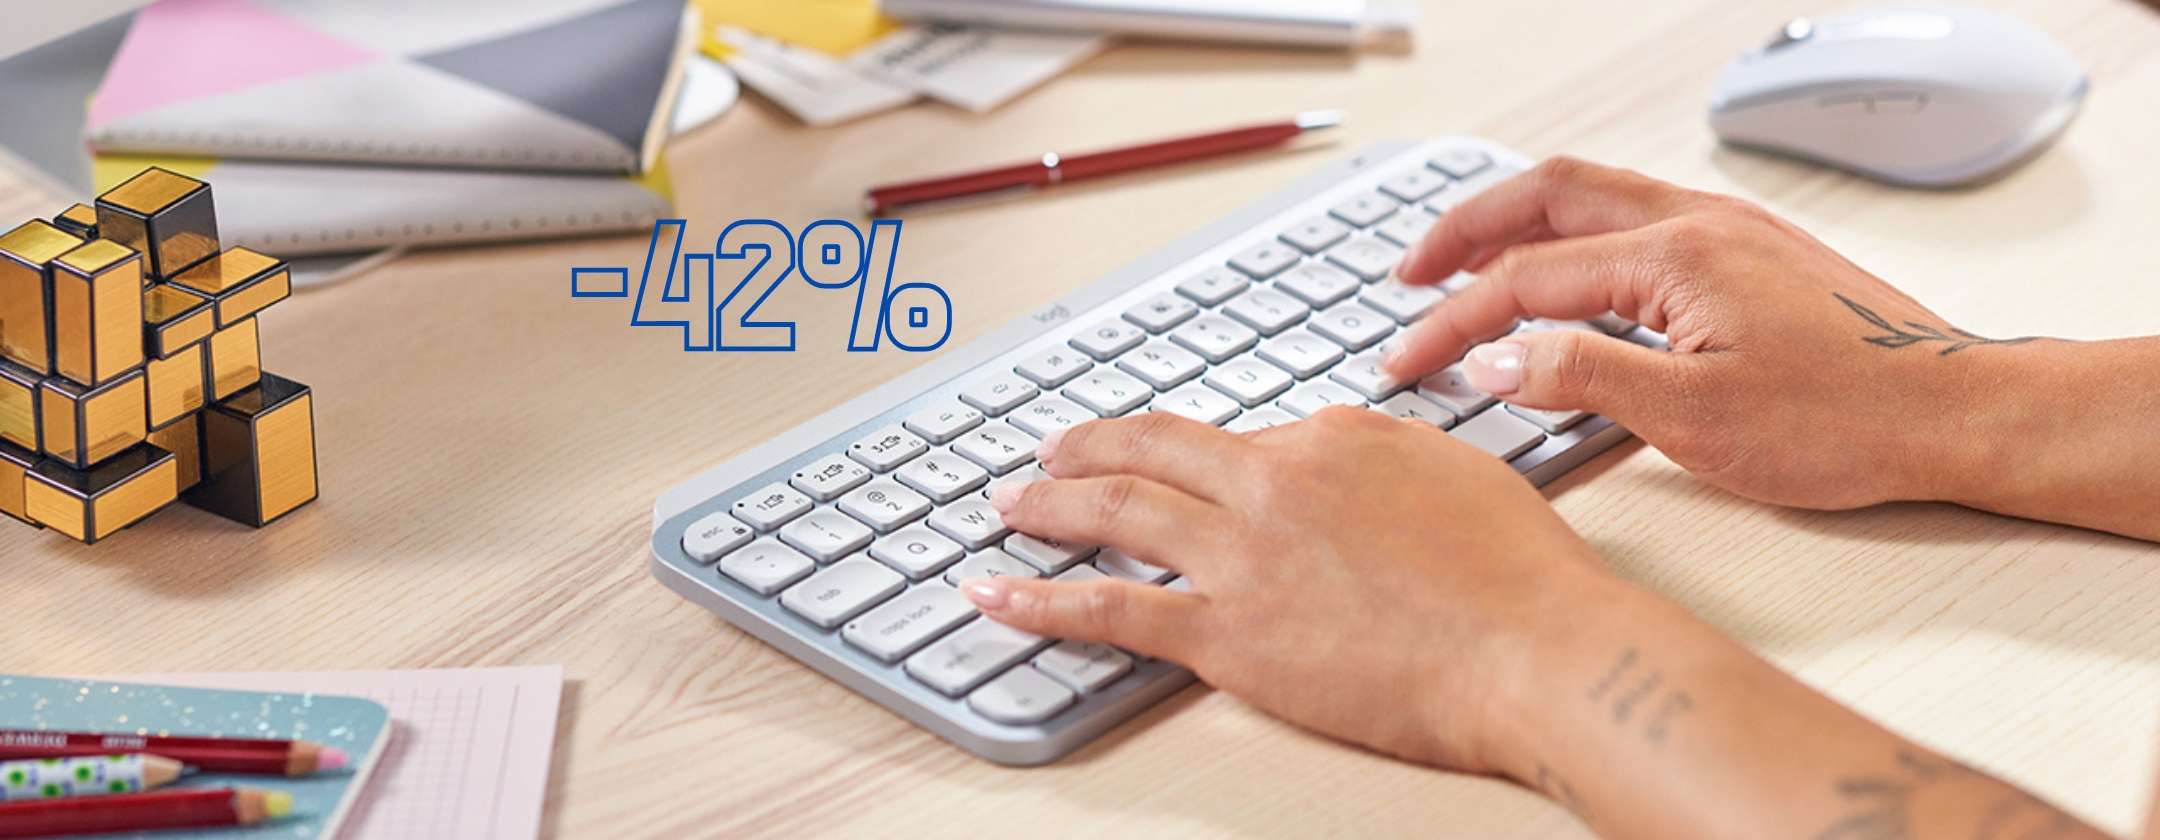 Tastiera Logitech MX Keys Mini: al 42% di SCONTO è vero AFFARE